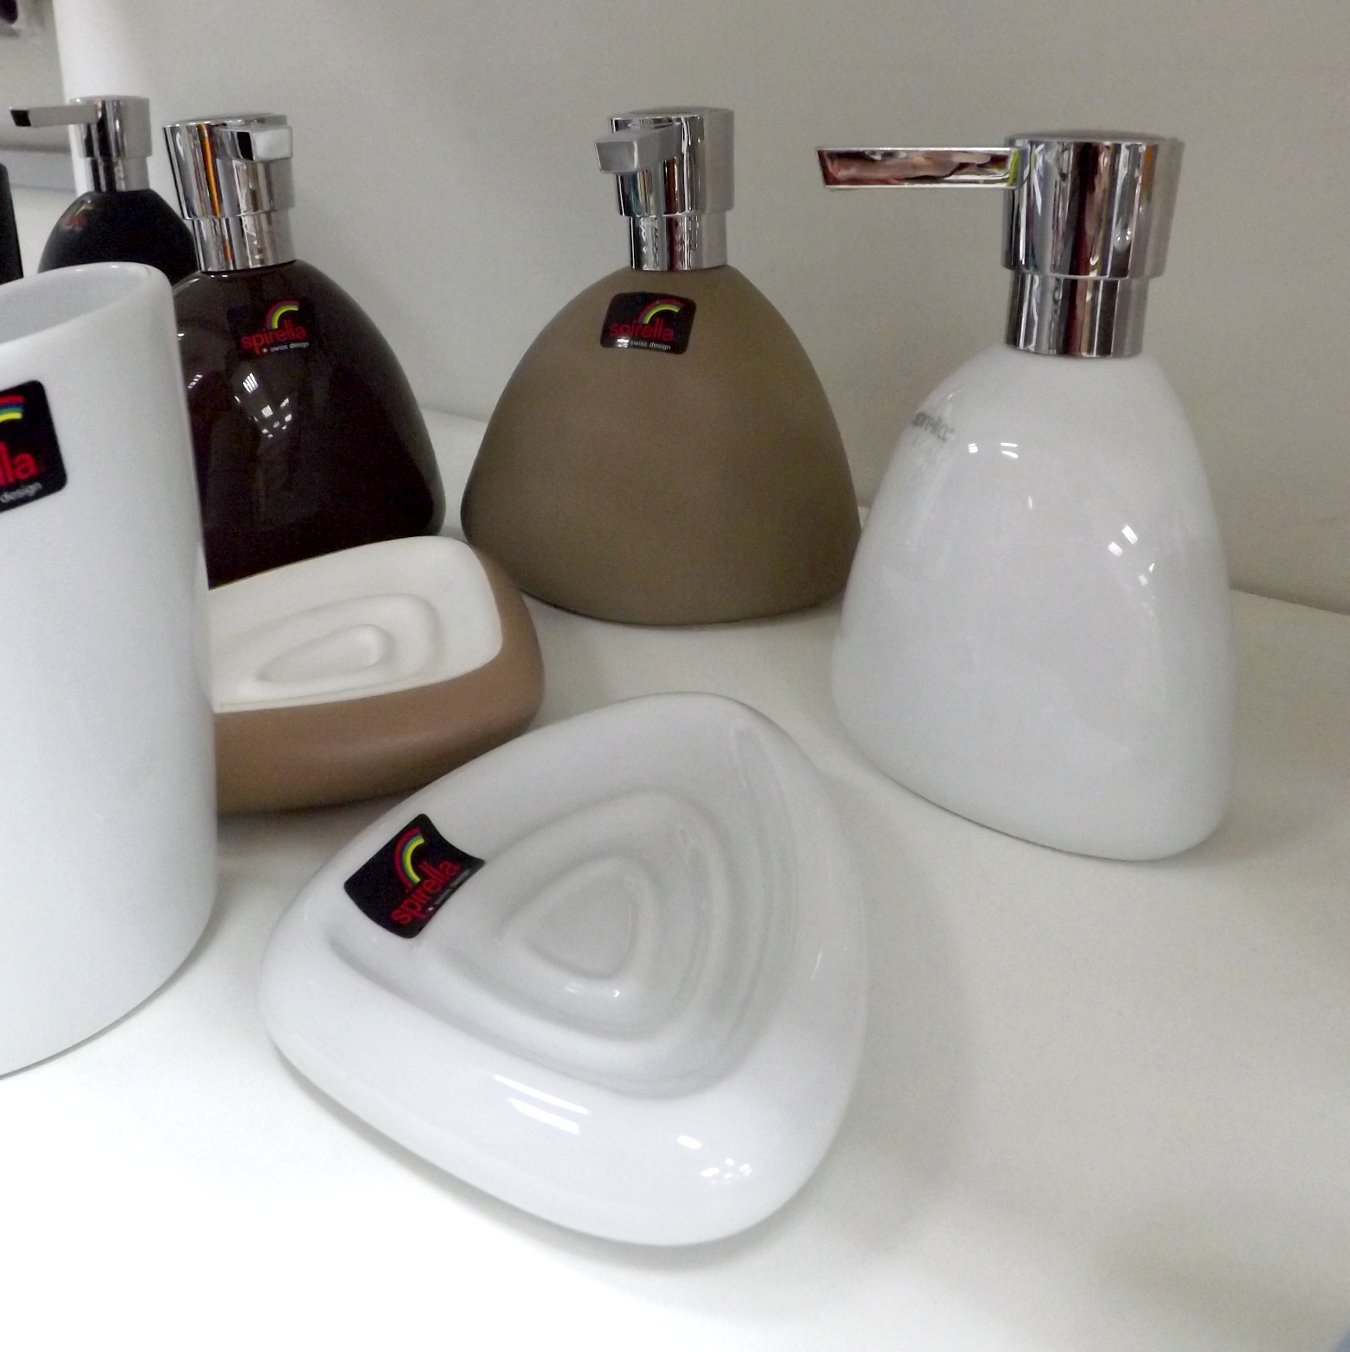 Аксессуары швейцарской фирмы Spirella из ассортимента 2015 года: дозаторы для мыла, мыльницы и стакан для щёток